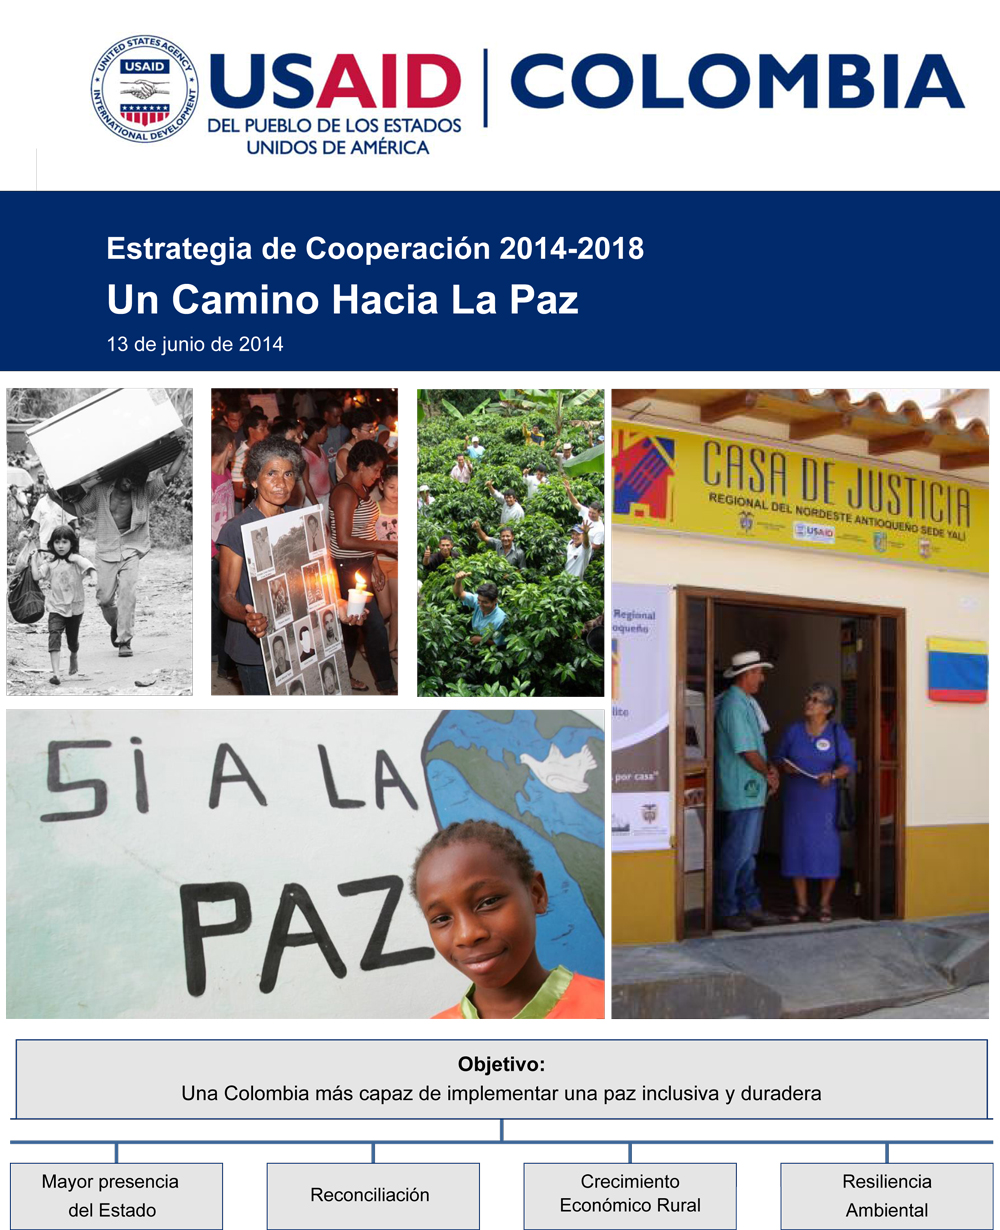 Versión en Español de la Estrategia de Cooperación de USAID/Colombia 2014 - 2018.